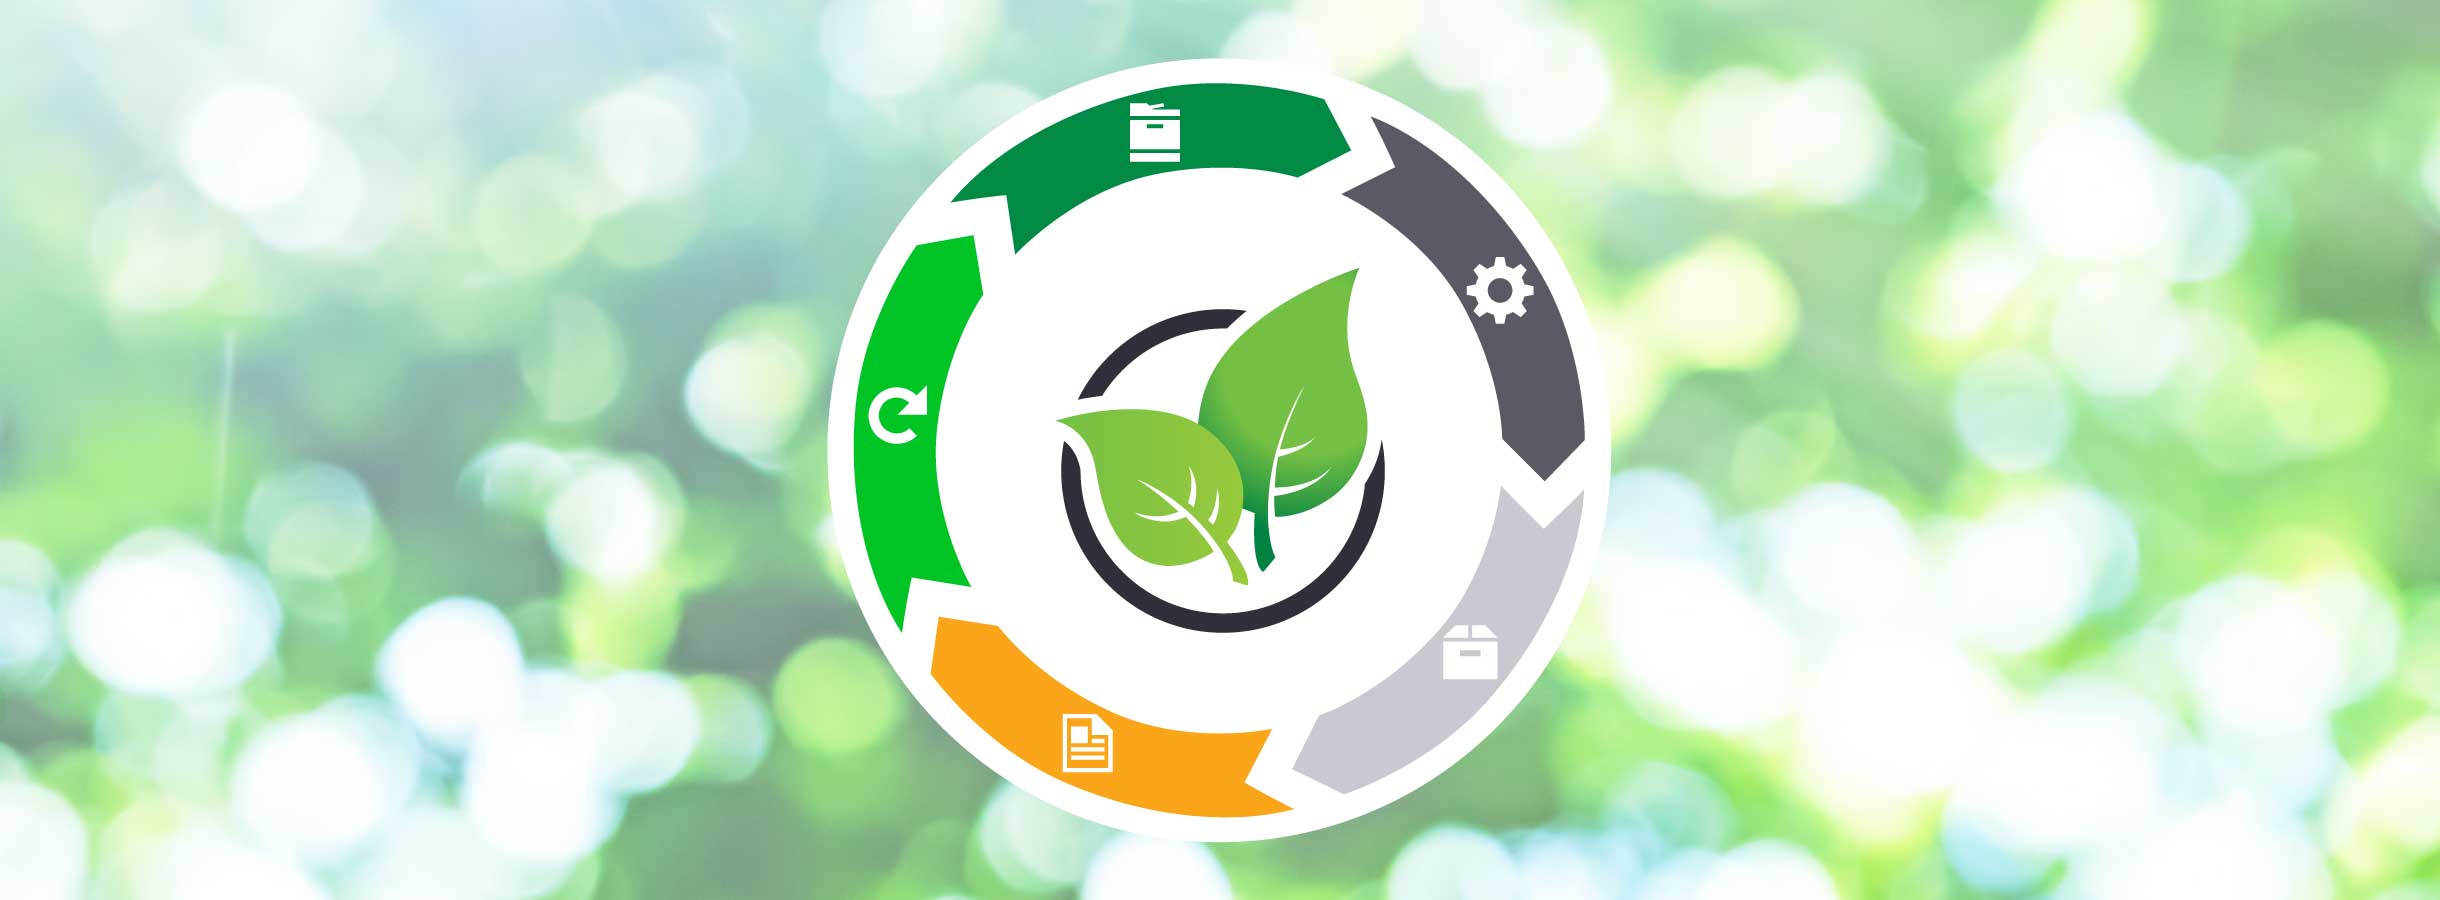 Εικόνα του γεννημένου κυκλικού σχεδιασμού των βιώσιμων αναλώσιμων της Lexmark.